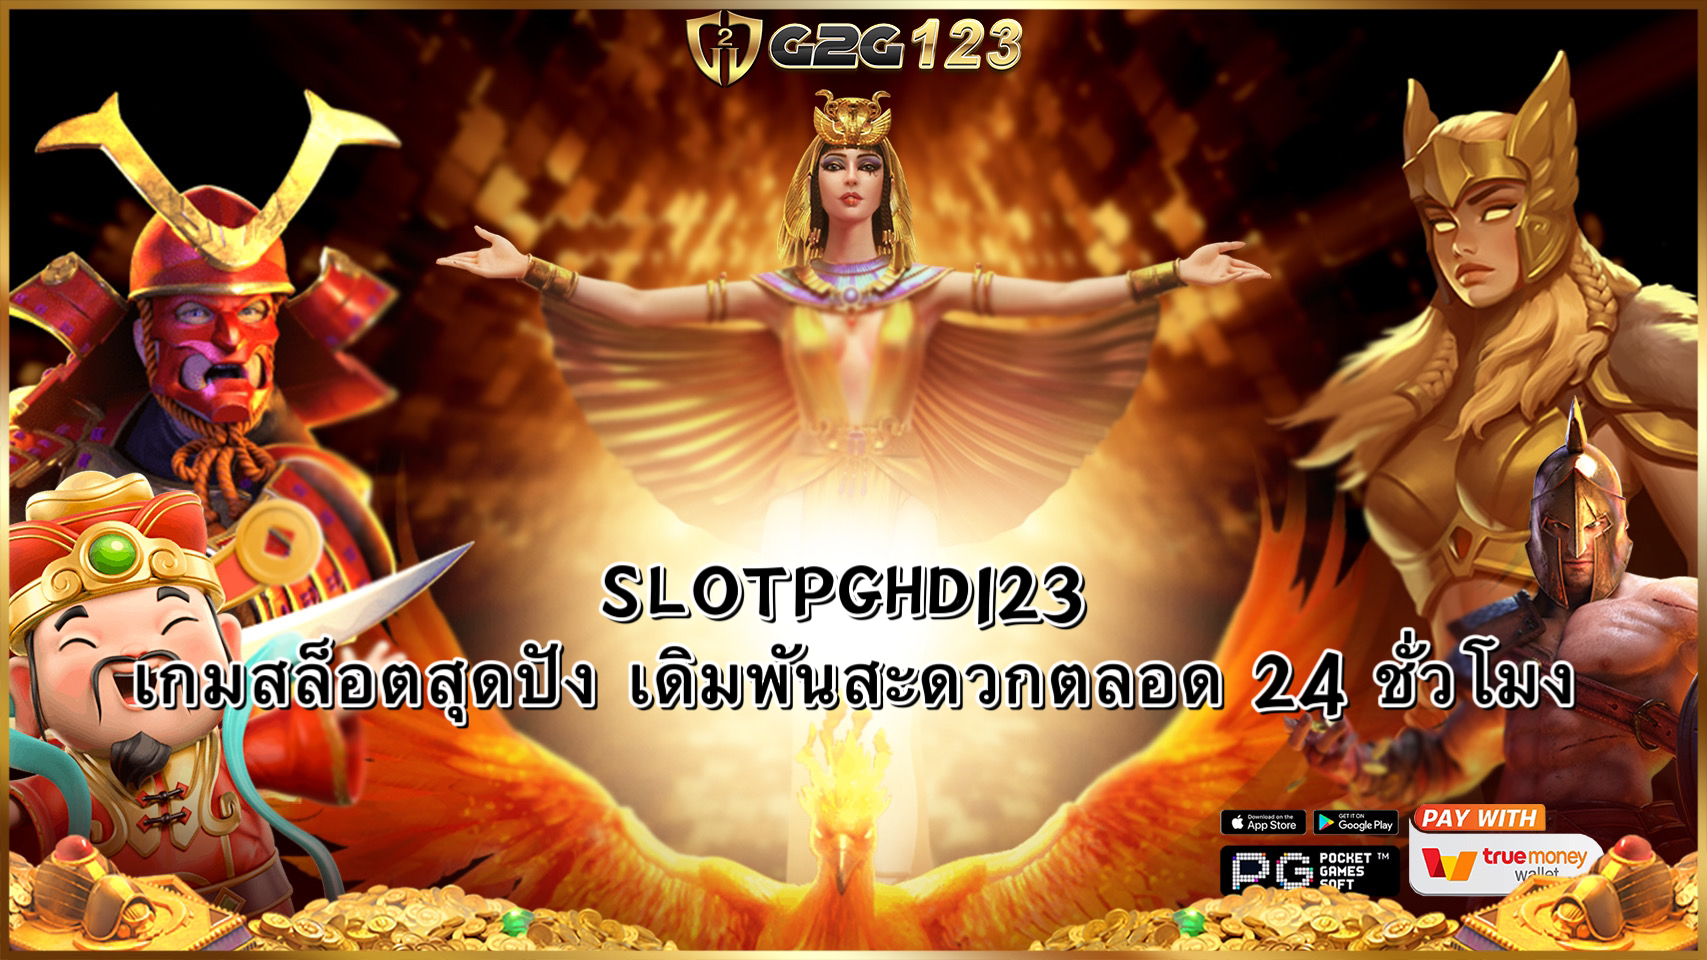 SLOTPGHD123